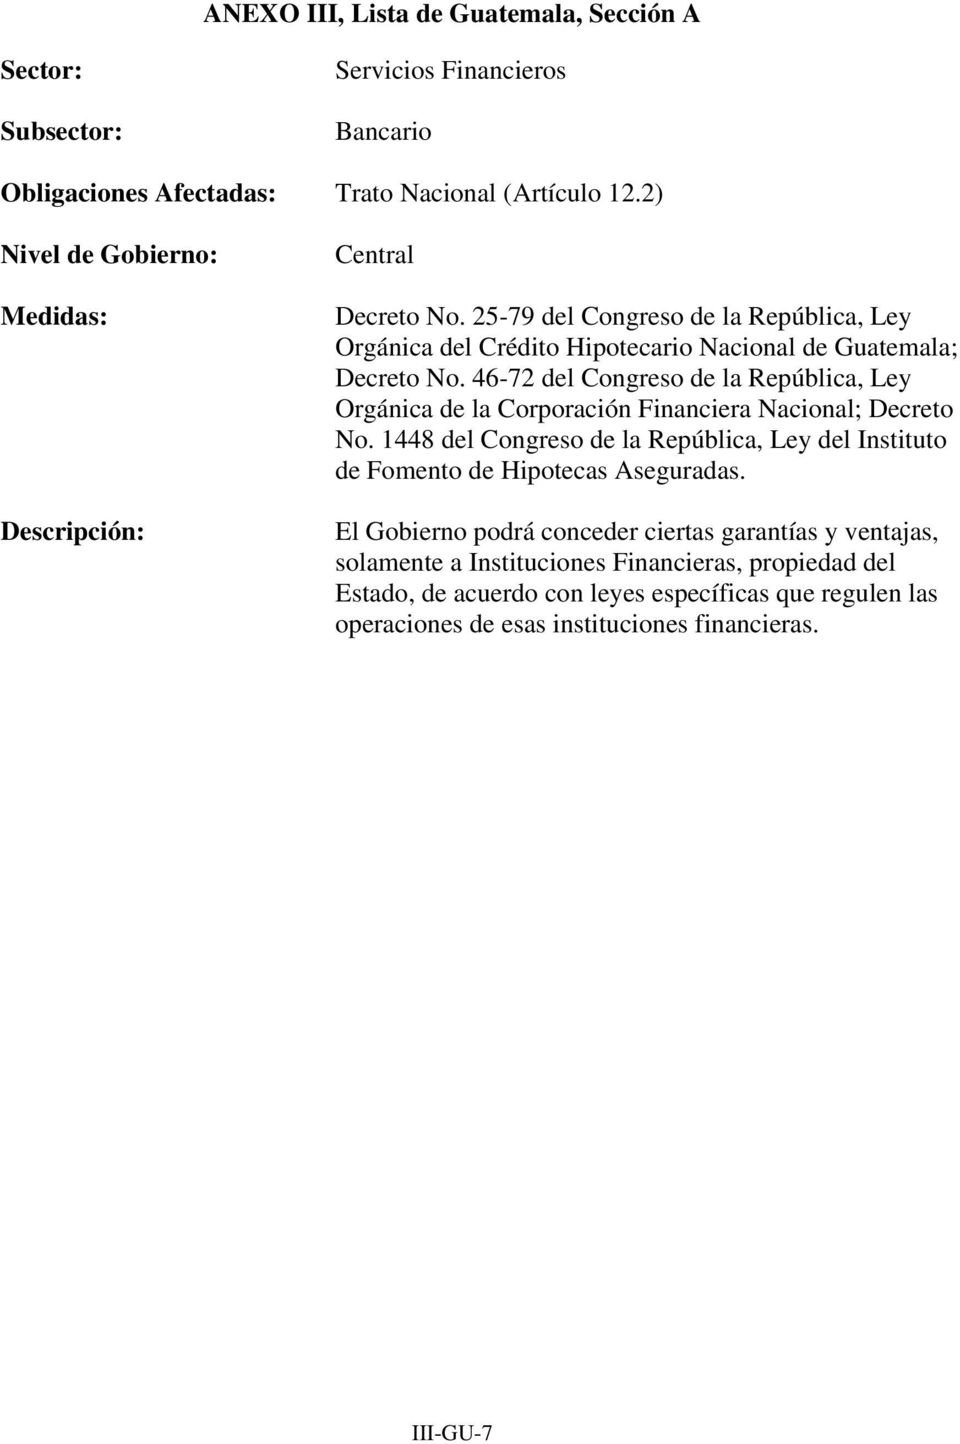 46-72 del Congreso de la República, Ley Orgánica de la Corporación Financiera Nacional; Decreto No.